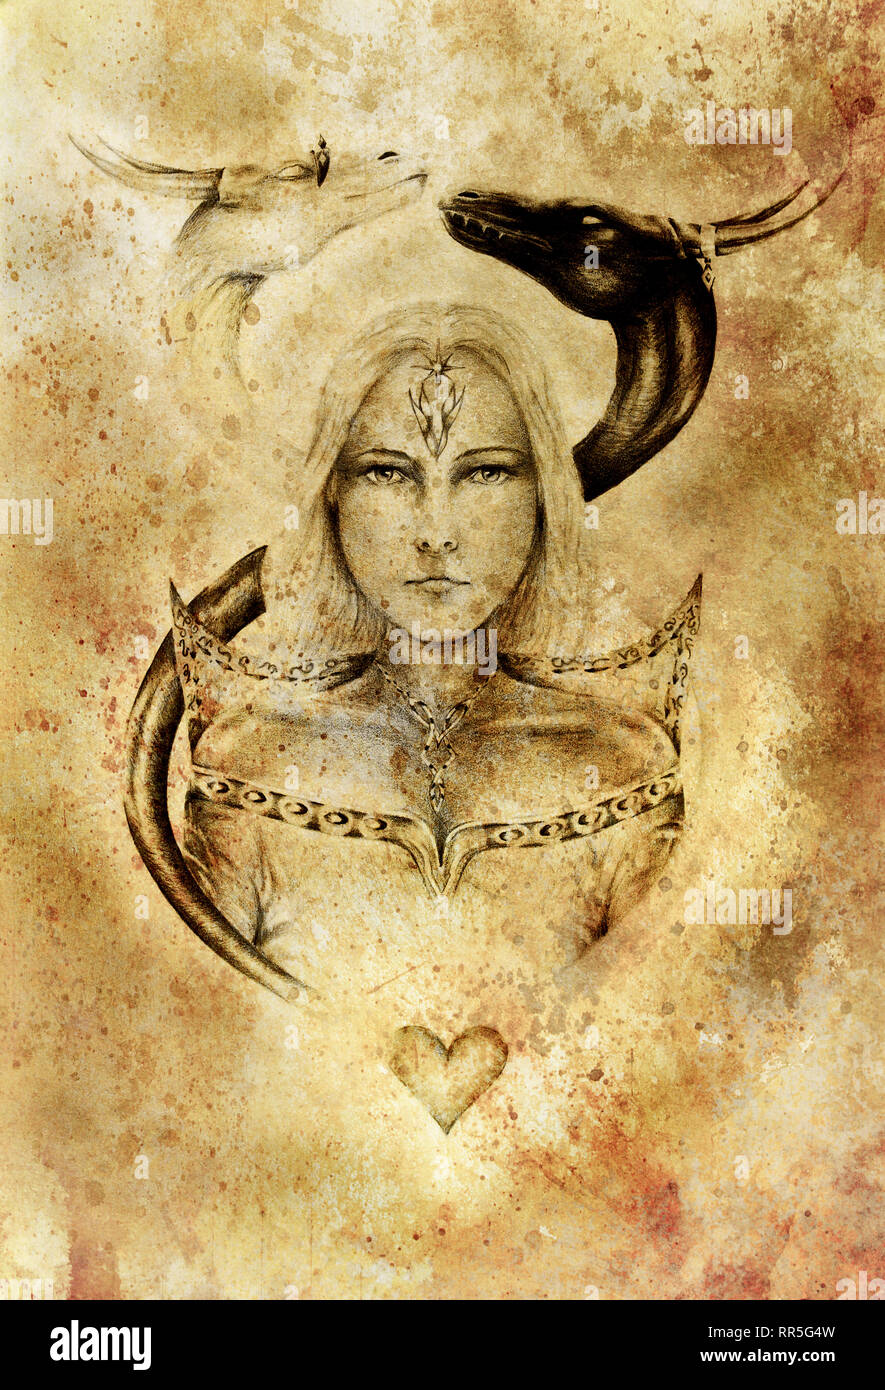 Zeichnung der mystischen junge Frau in historischen Kleid mit zwei Drachen Kopf über ihr. Stockfoto